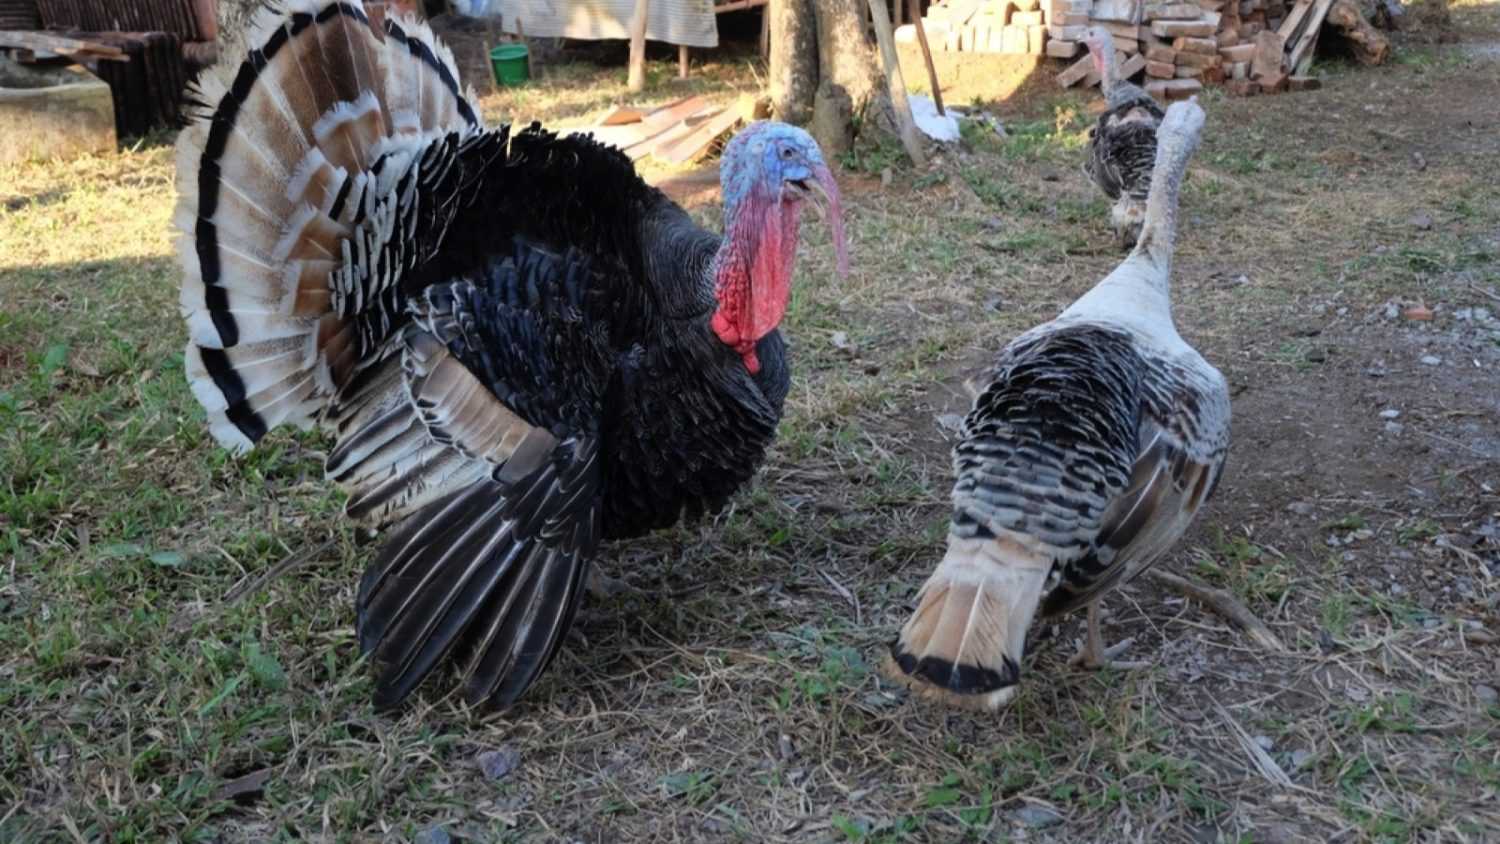 Turkey in farm